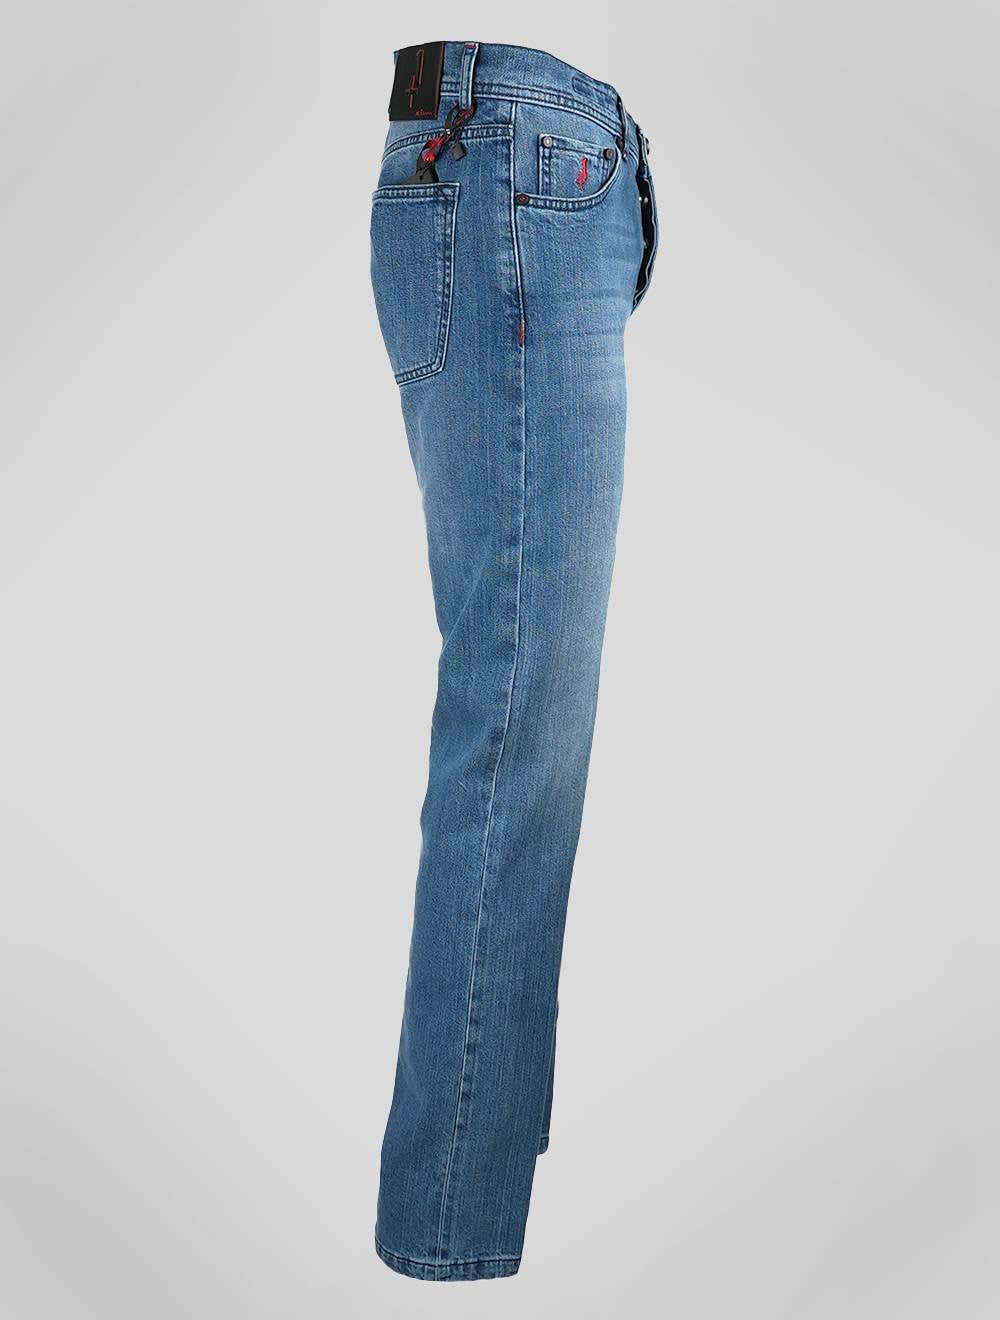 Голубые джинсы из хлопка Kiton Ea, специальная серия